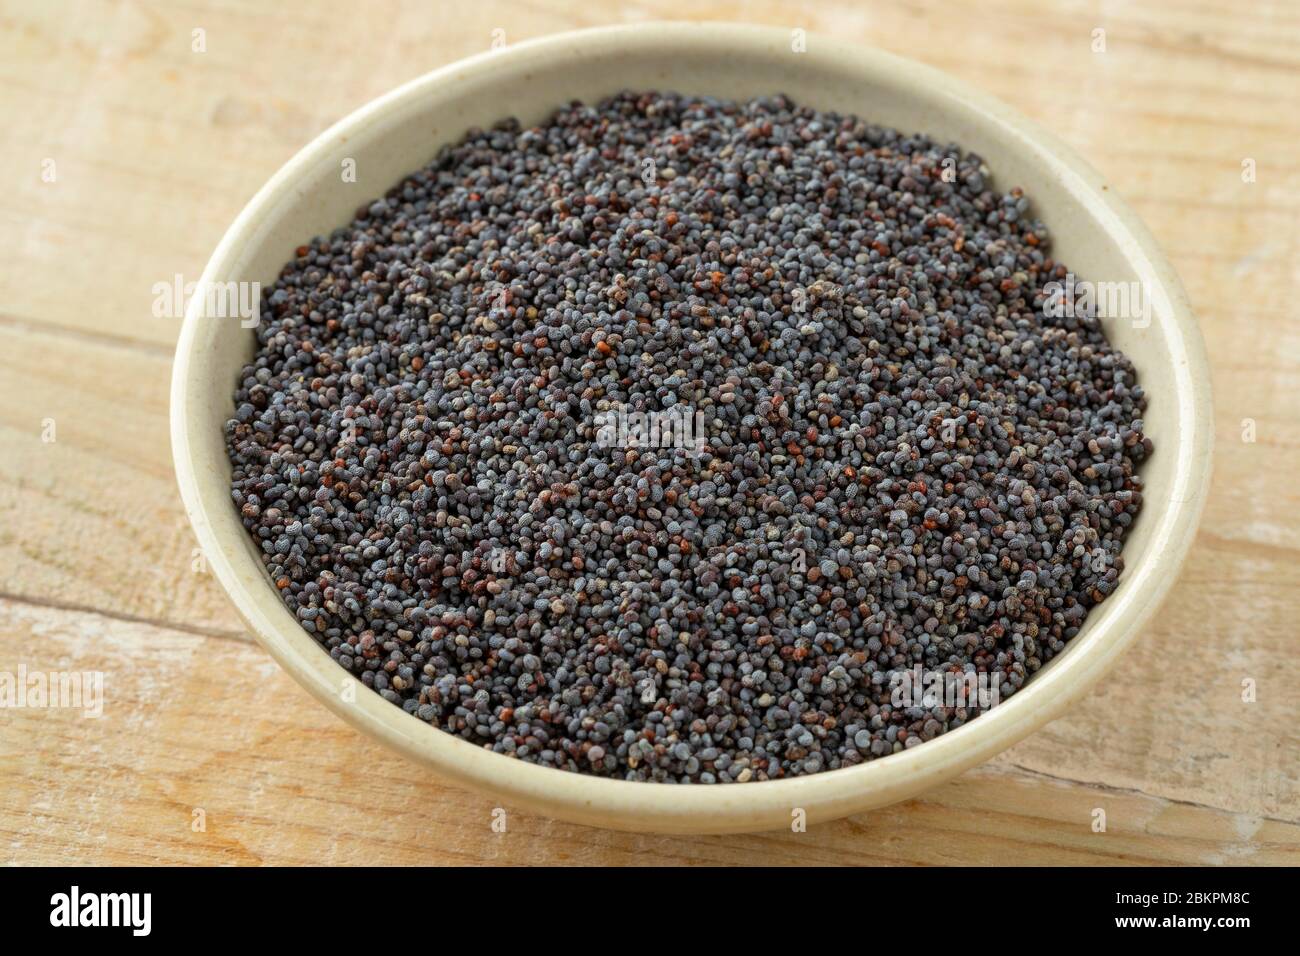 Cuenco con semilla de amapola negra como ingrediente Foto de stock